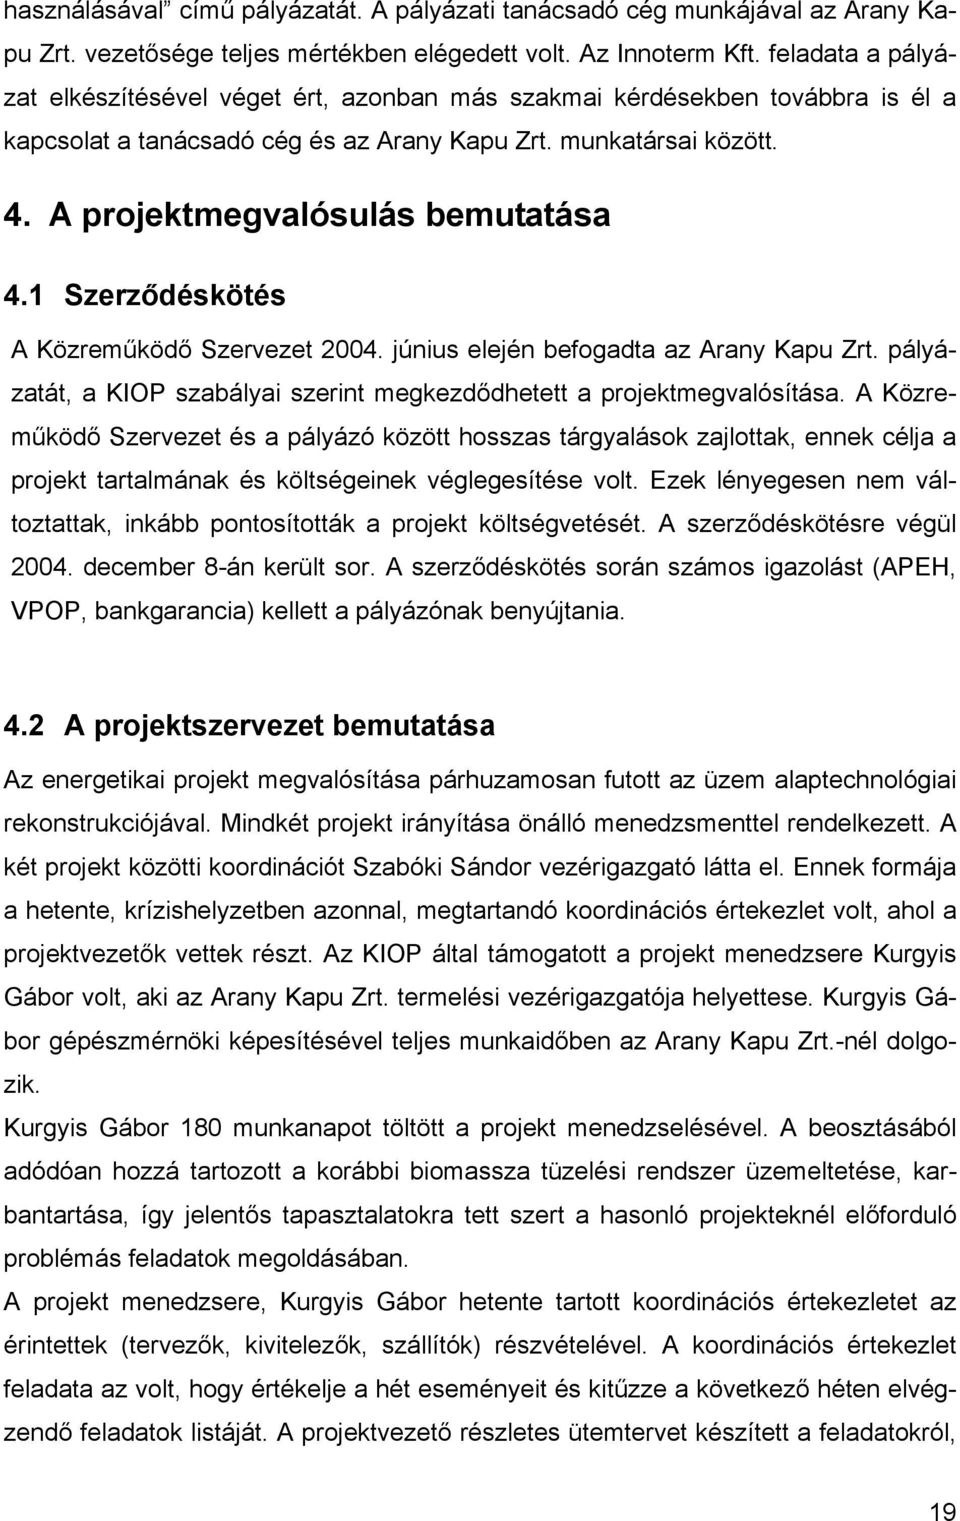 A projektmegvalósulás bemutatása 4.1 Szerződéskötés A Közreműködő Szervezet 2004. június elején befogadta az Arany Kapu Zrt.